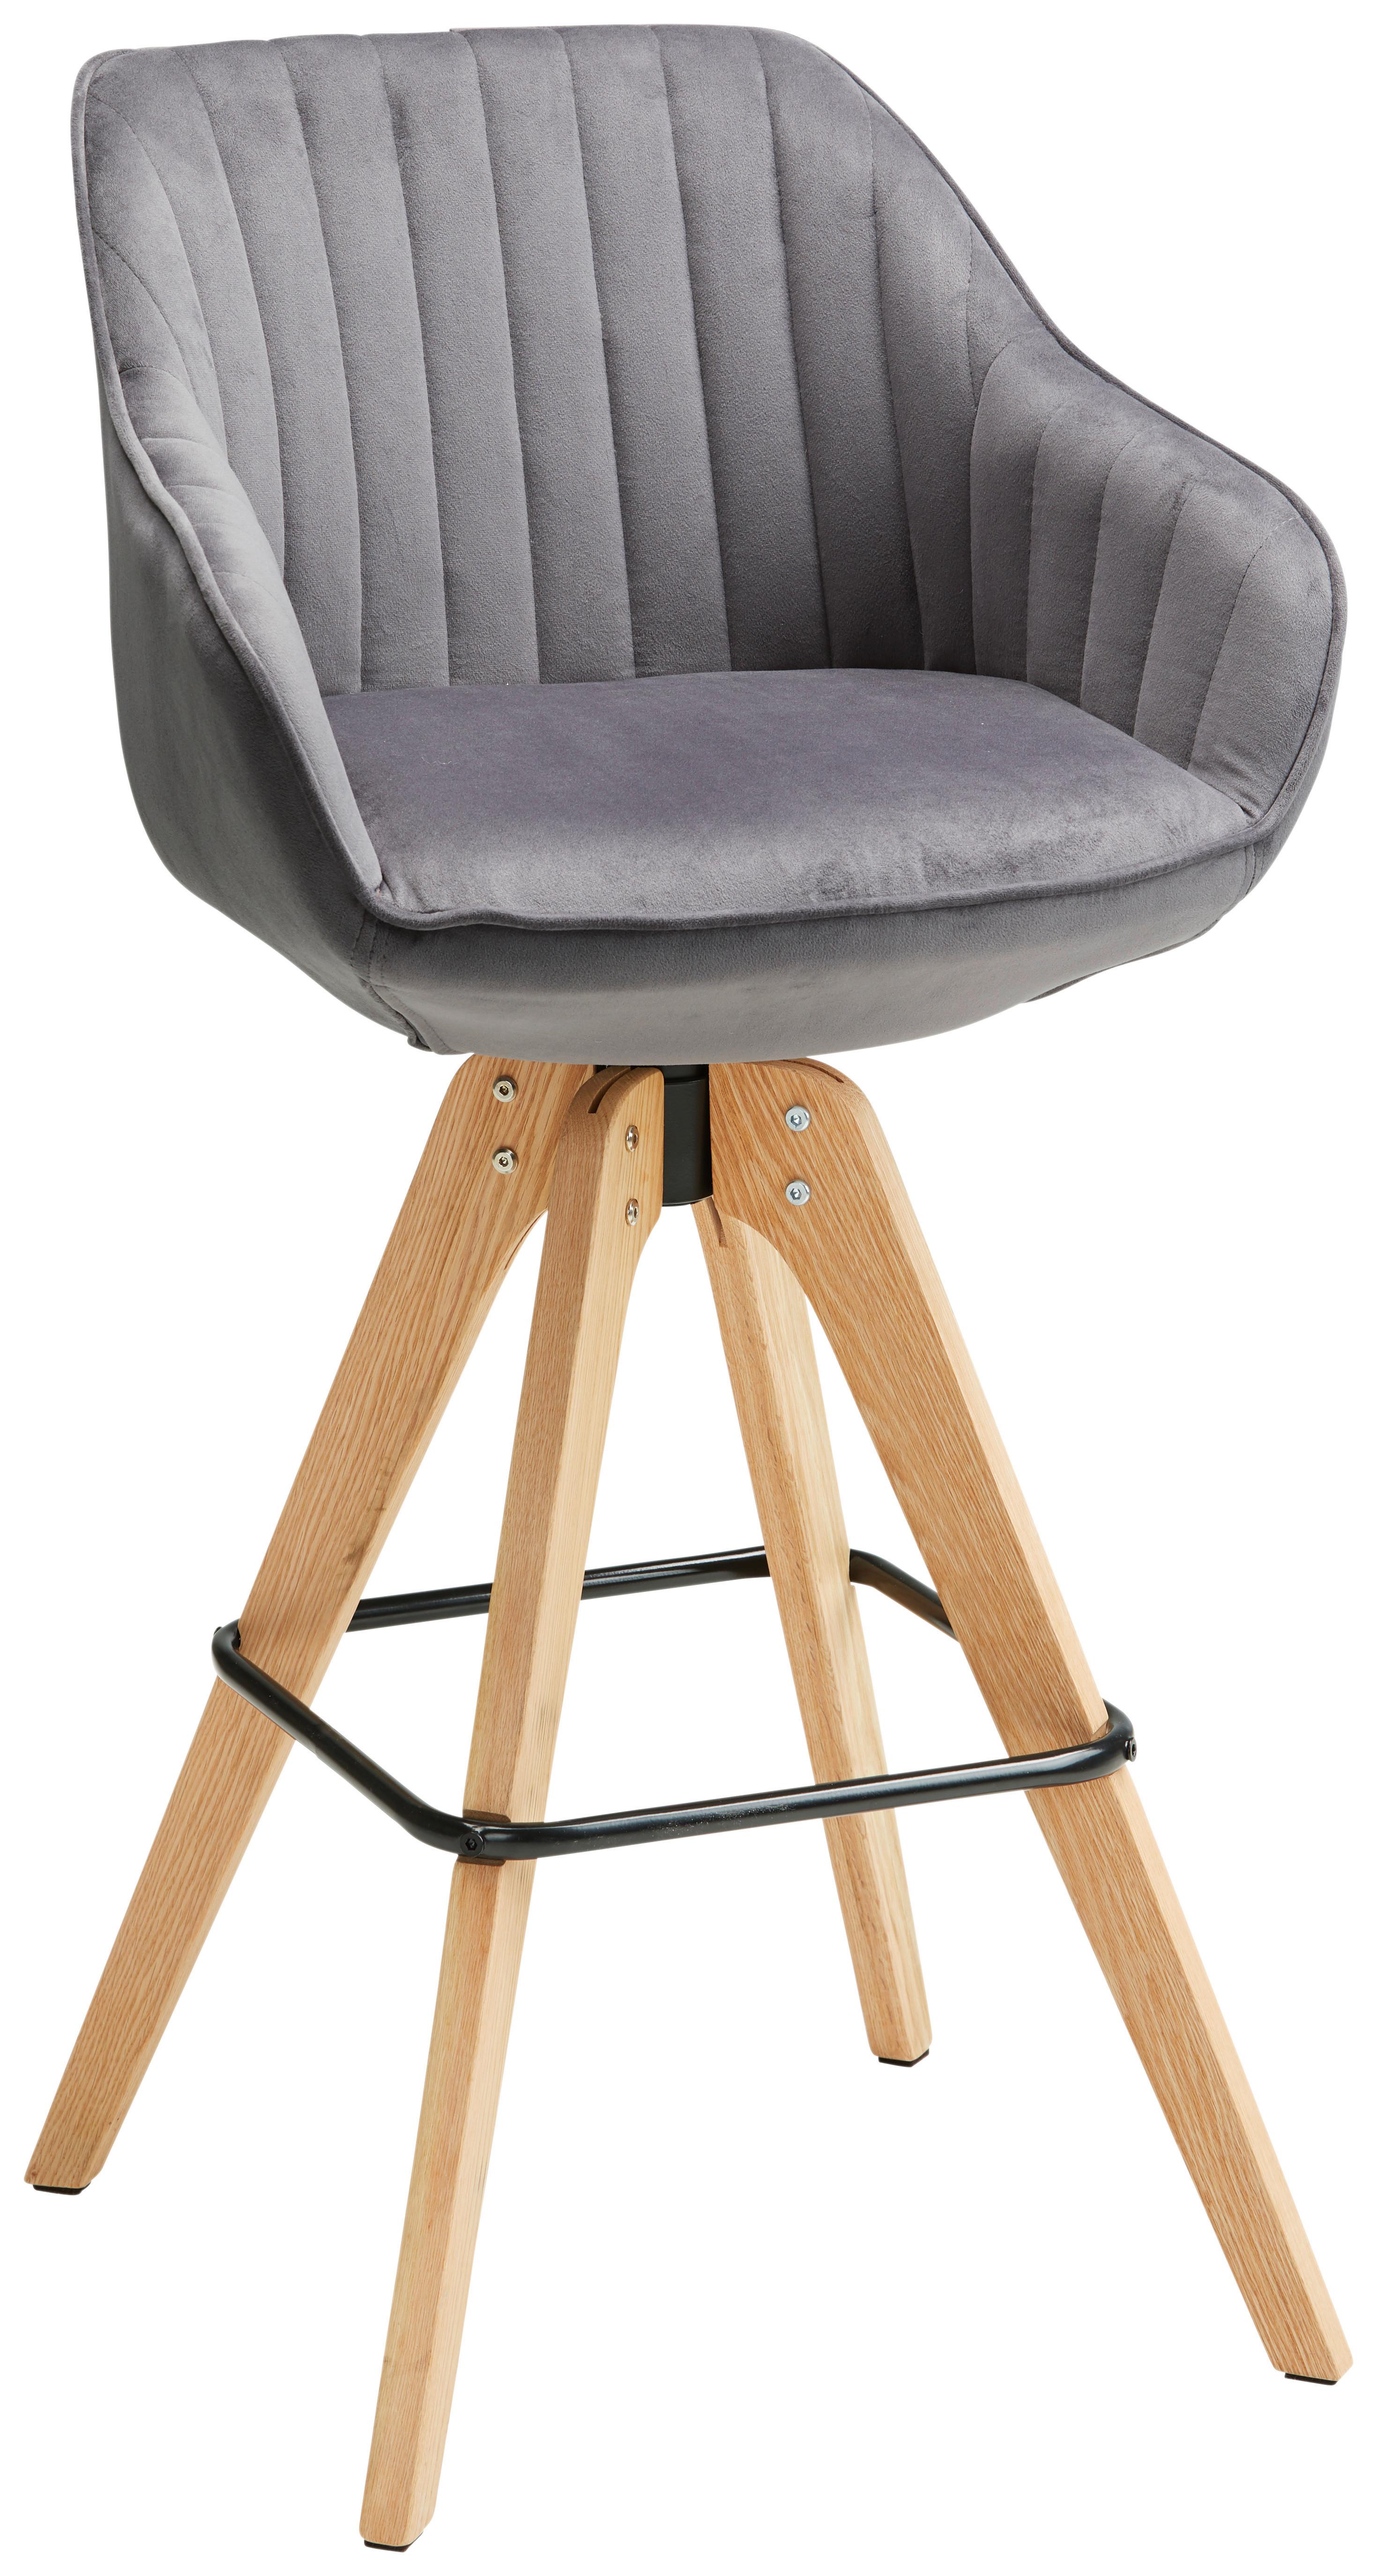 Barska Stolica Chill - tamno siva/natur, Modern, drvo/tekstil (55/106/78/56cm) - Premium Living